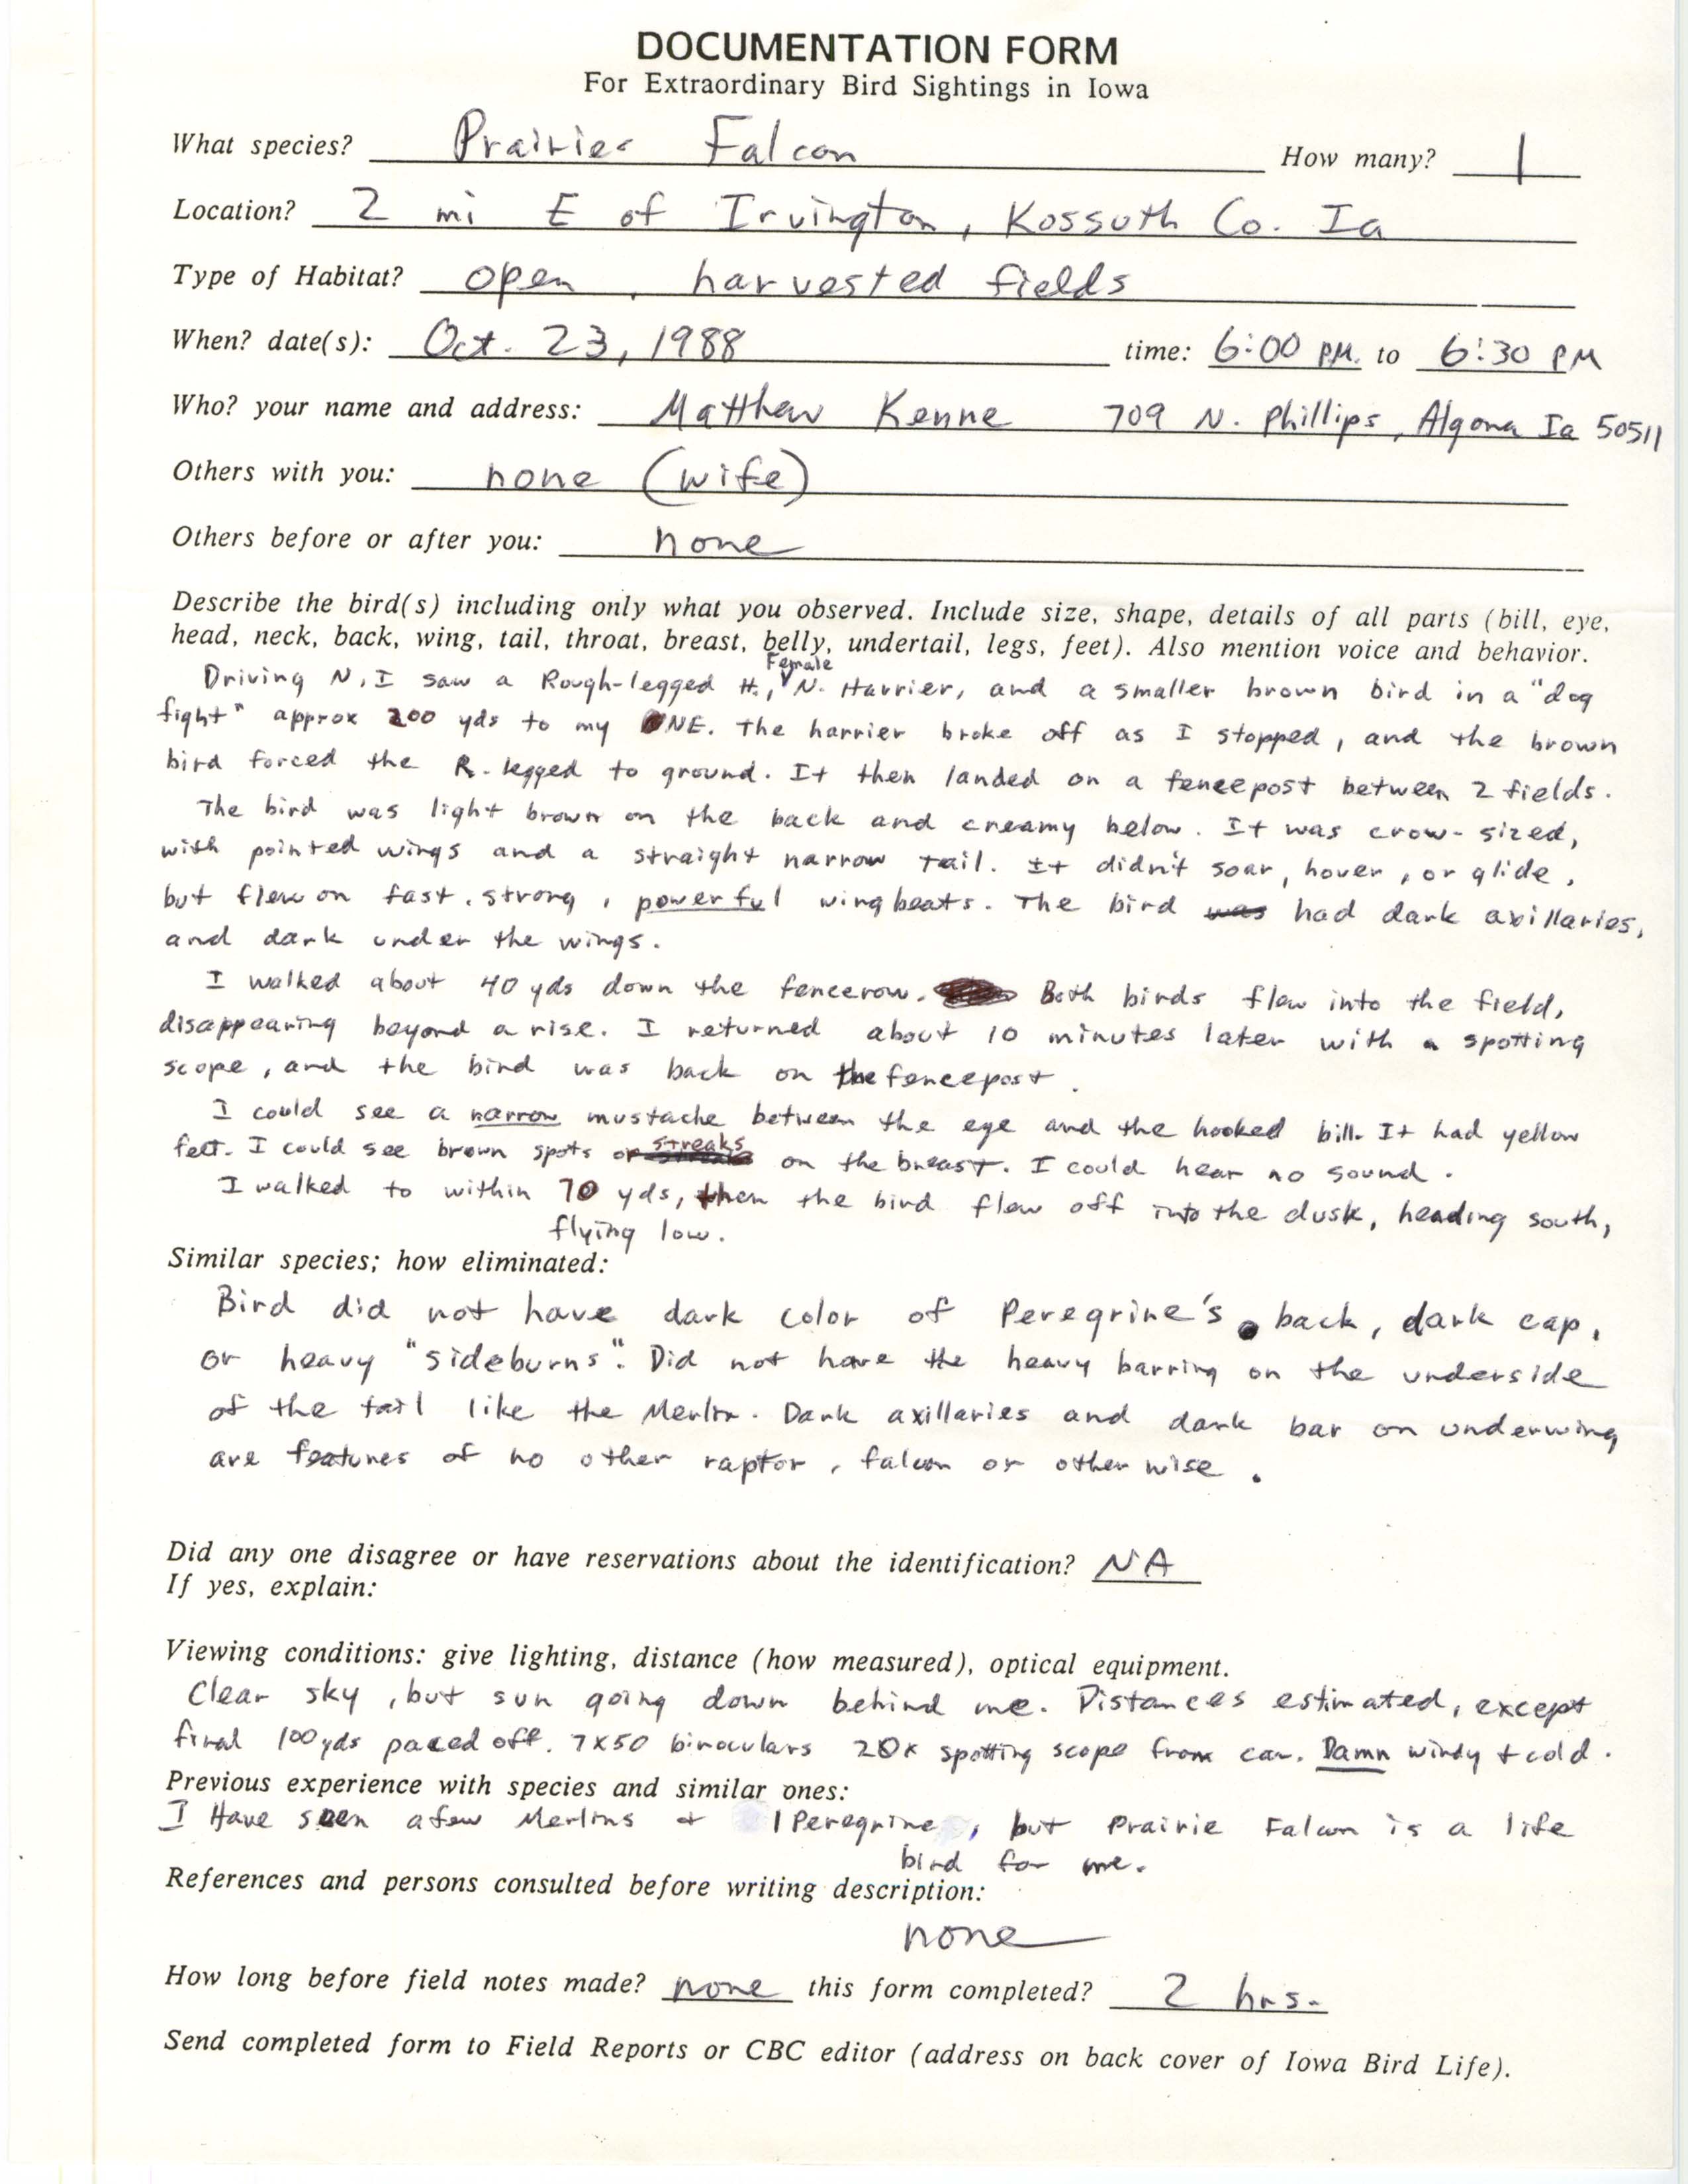 Rare bird documentation form for Prairie Falcon east of Irvington, 1988